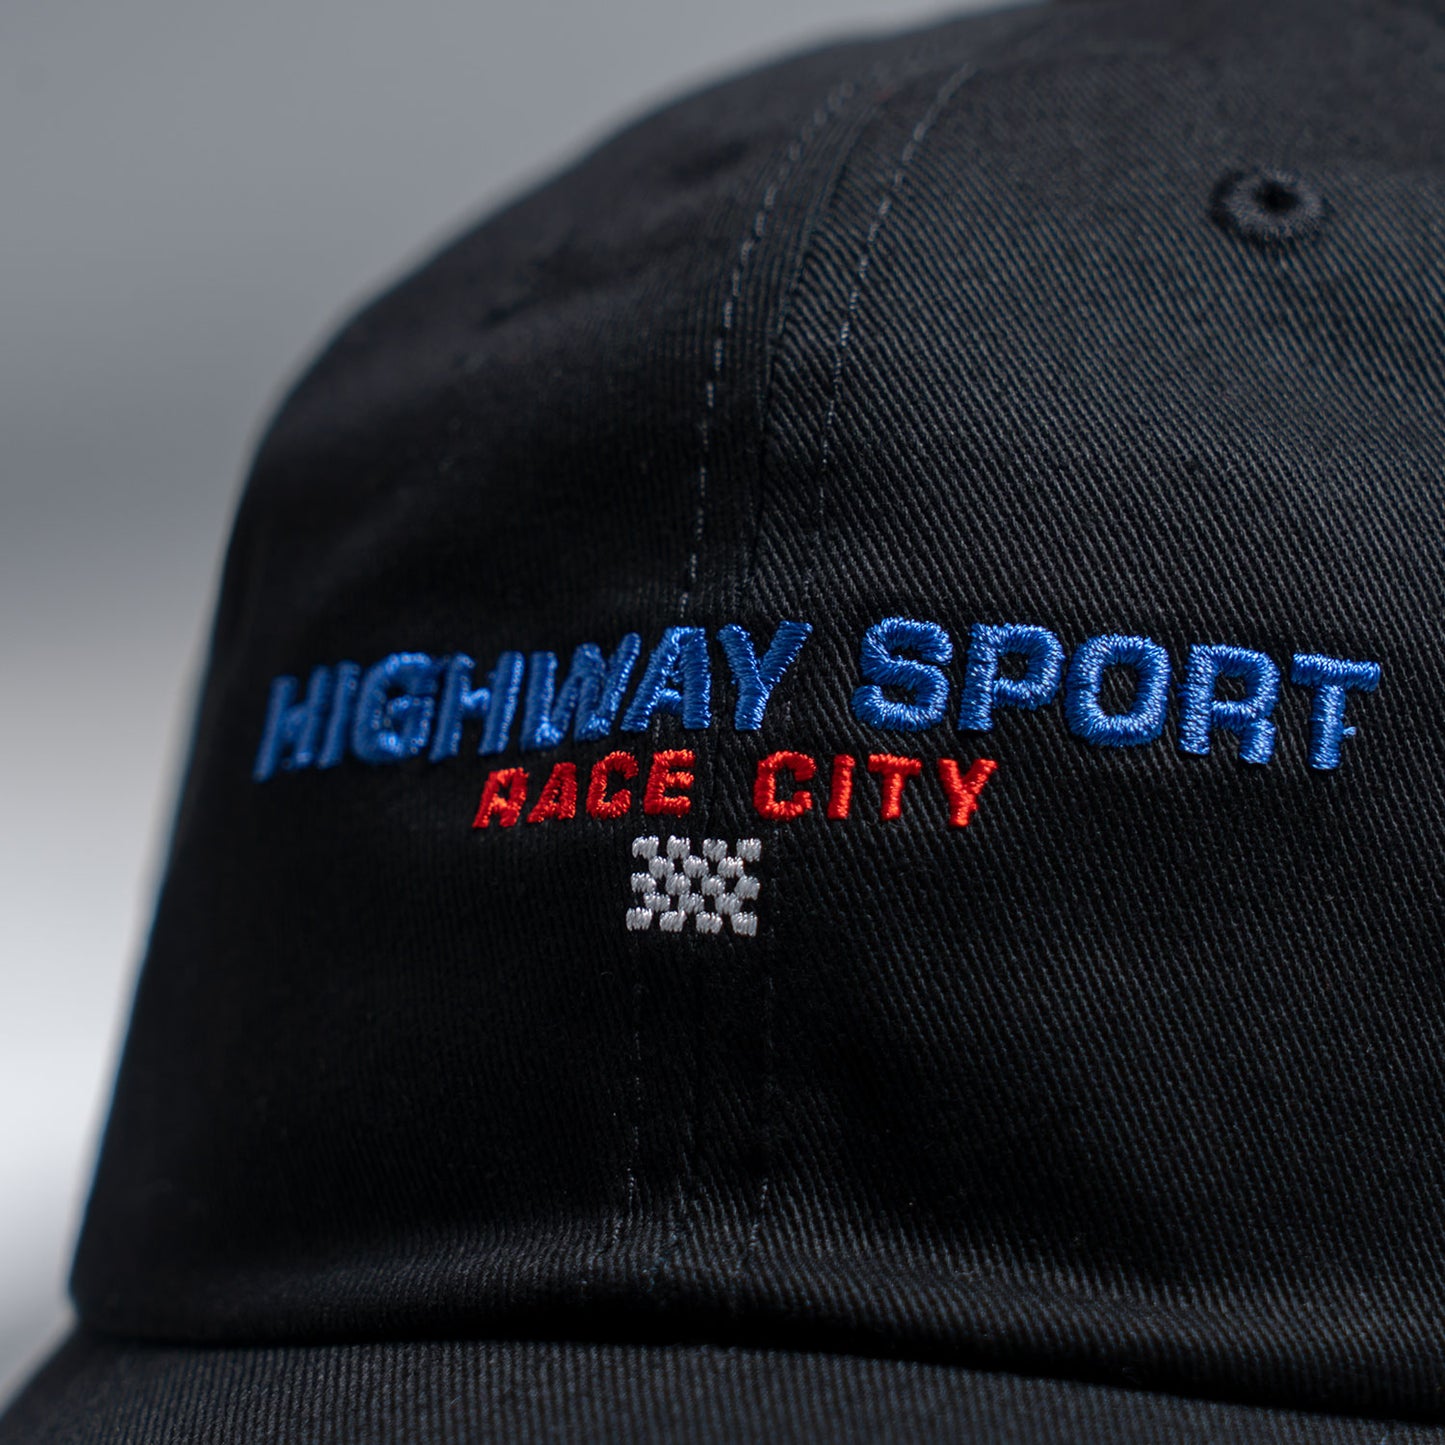 HIGHWAY SPORT CAP